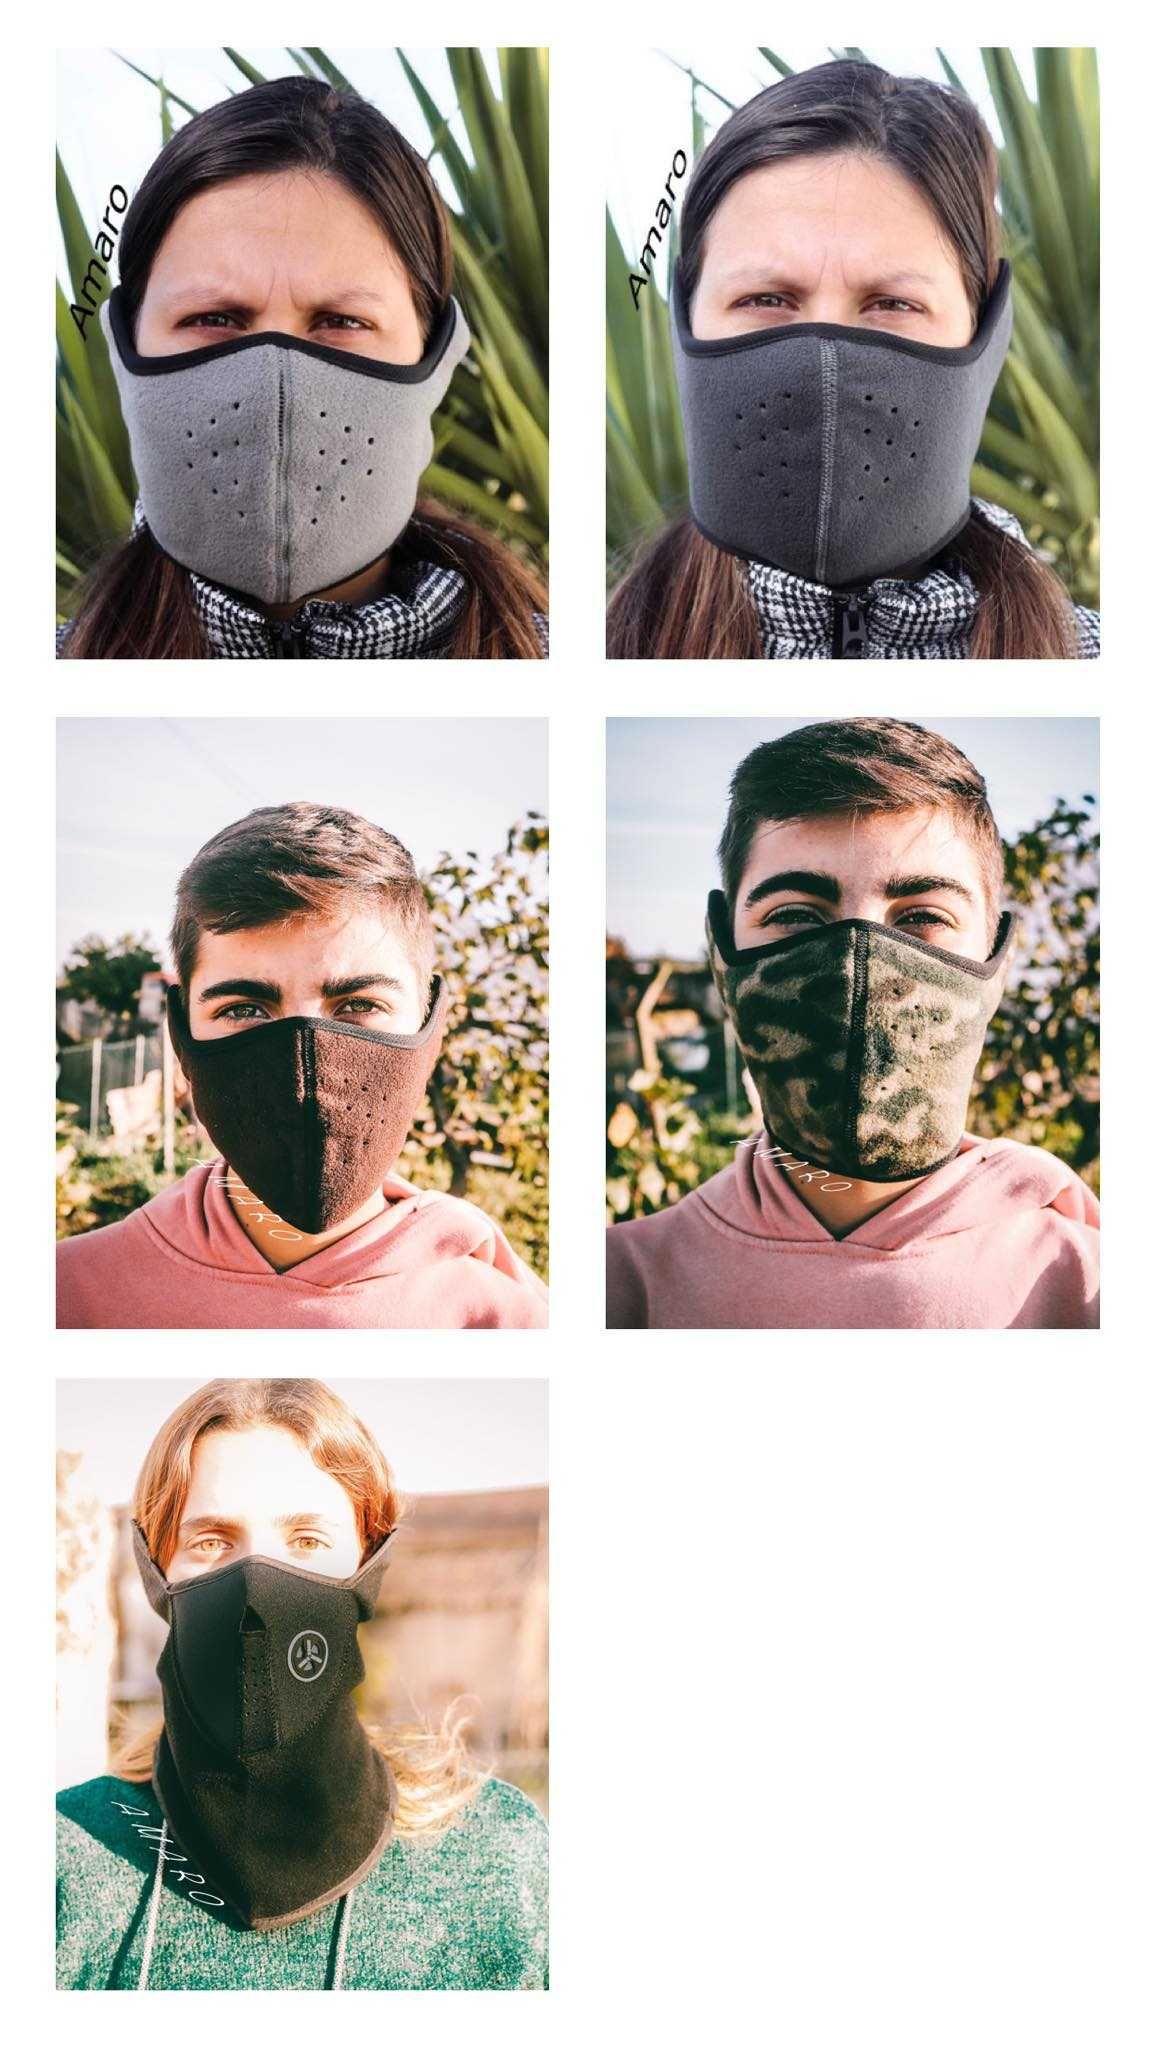 Mascara Facial Capacete Aberto (Mota, Exército, Airsoft) 5 Modelos